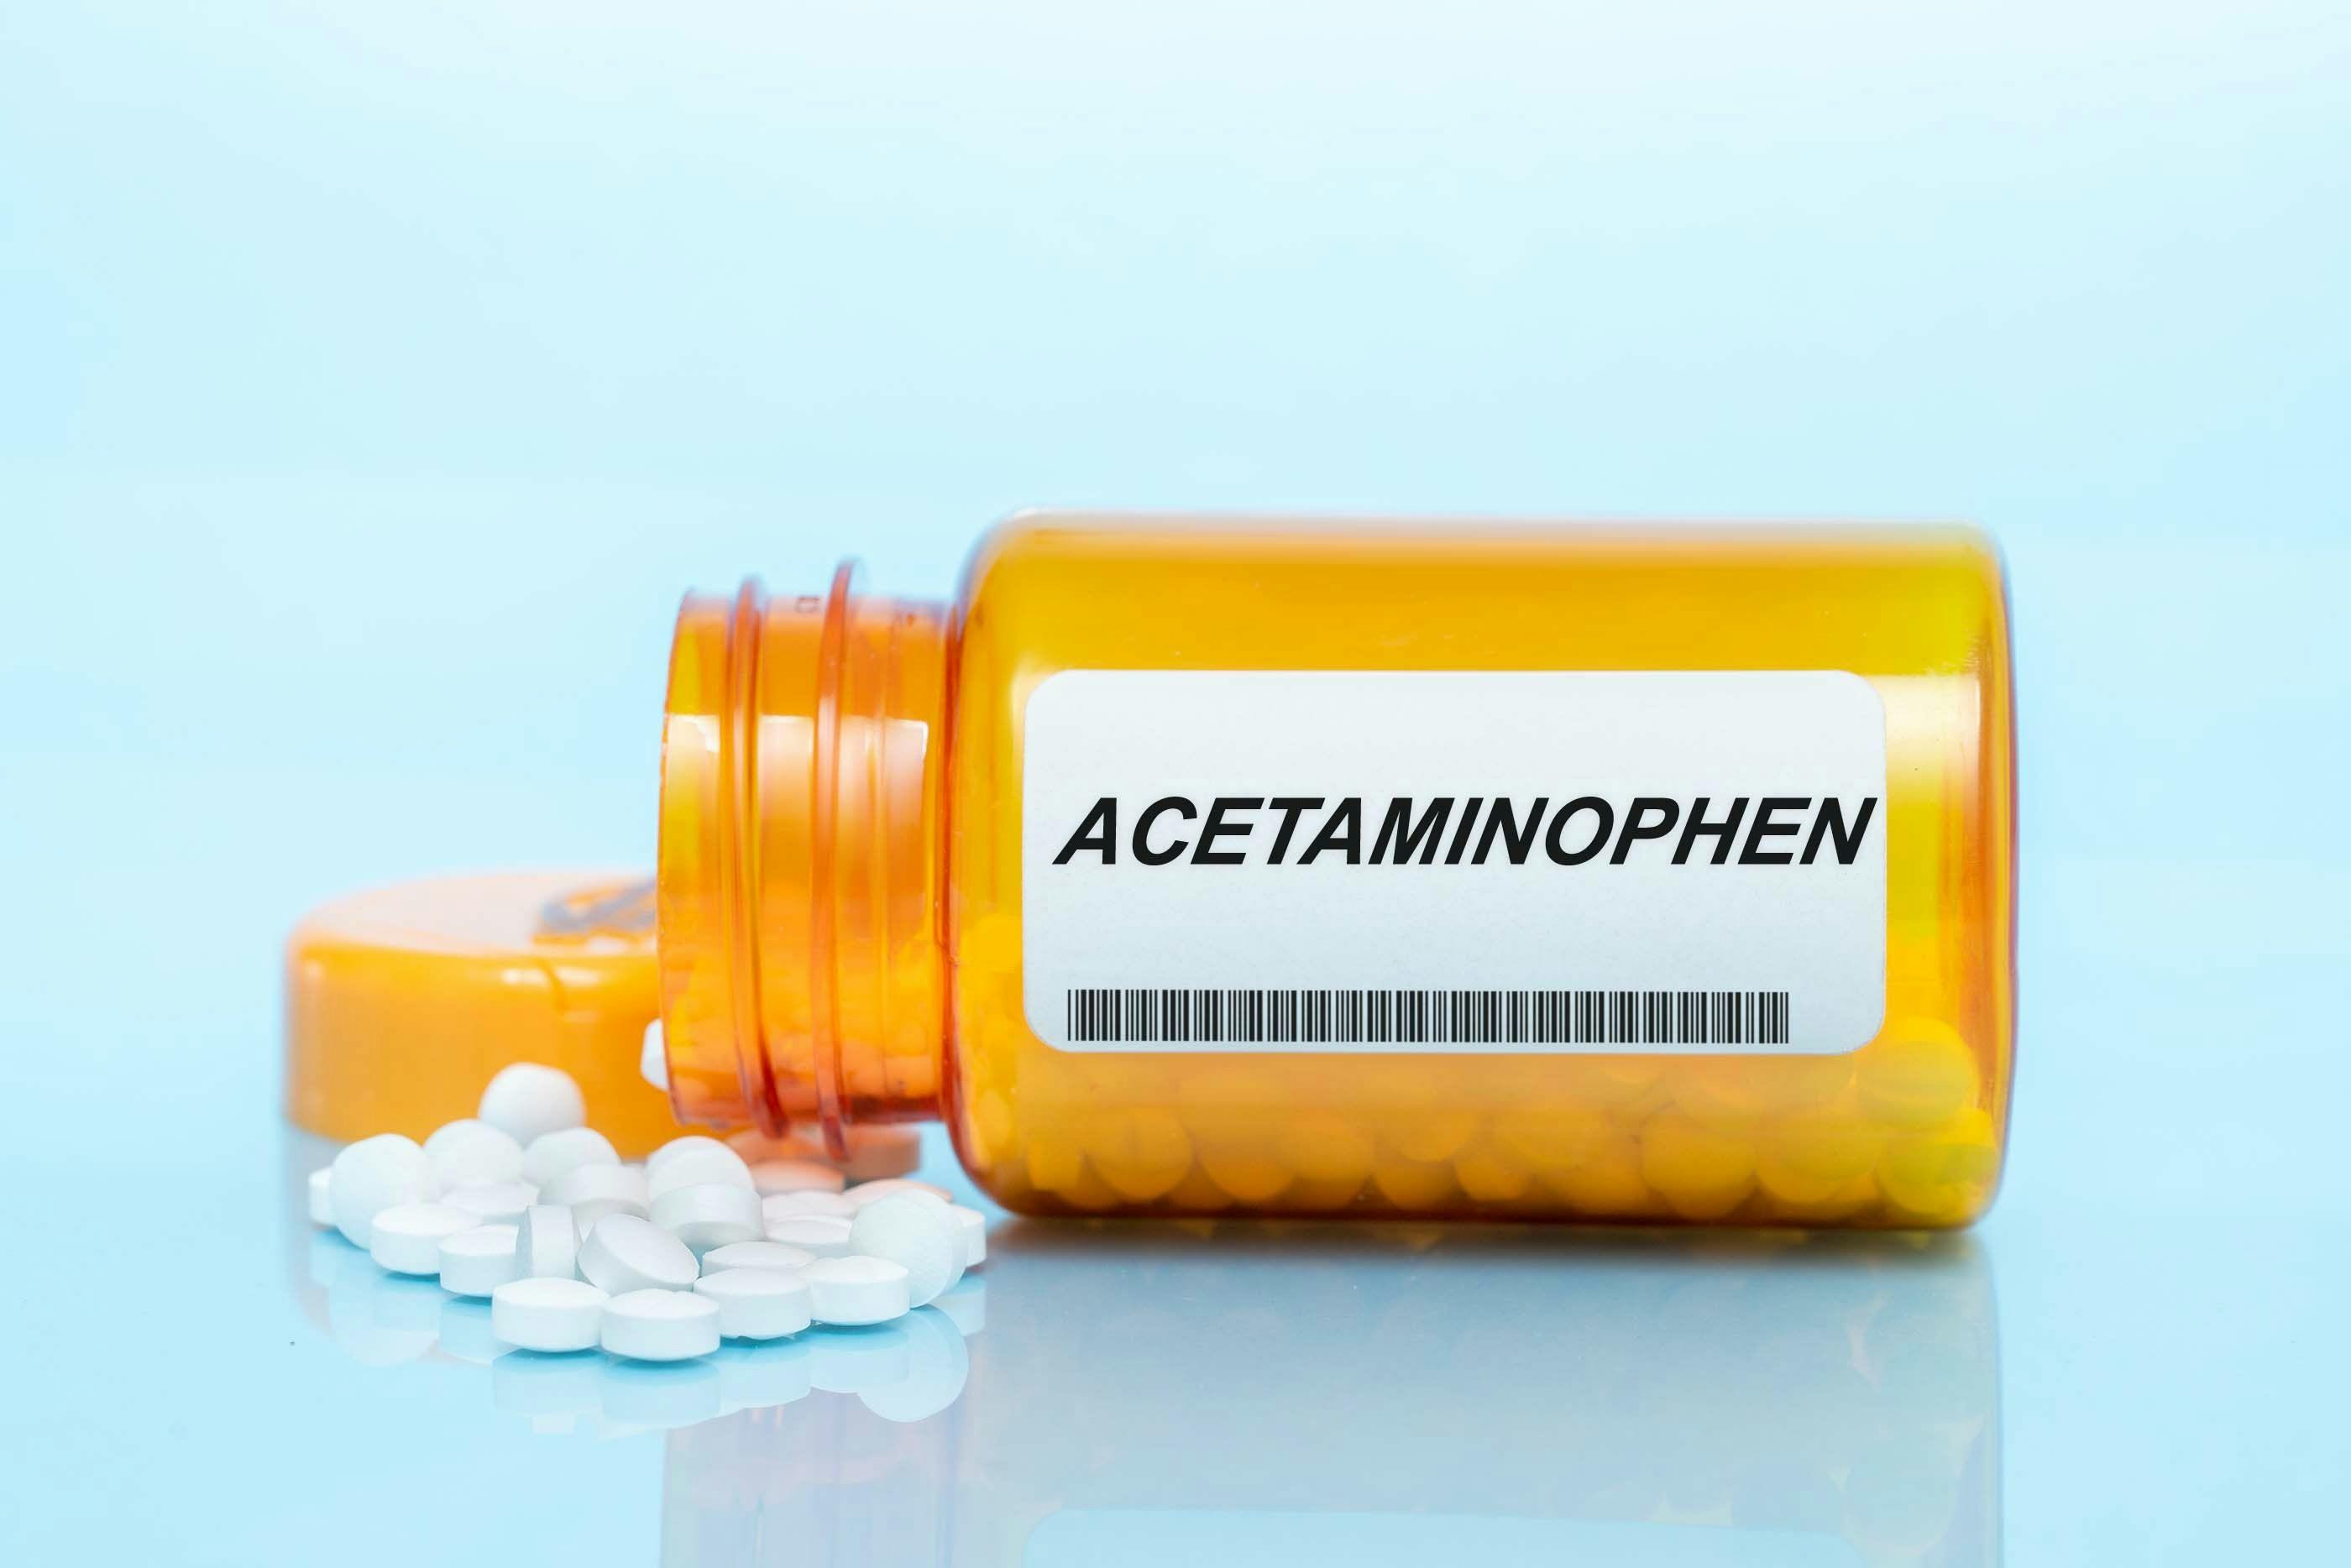 Acetaminophen Bottle | image credit: luchschenF - stock.adobe.com